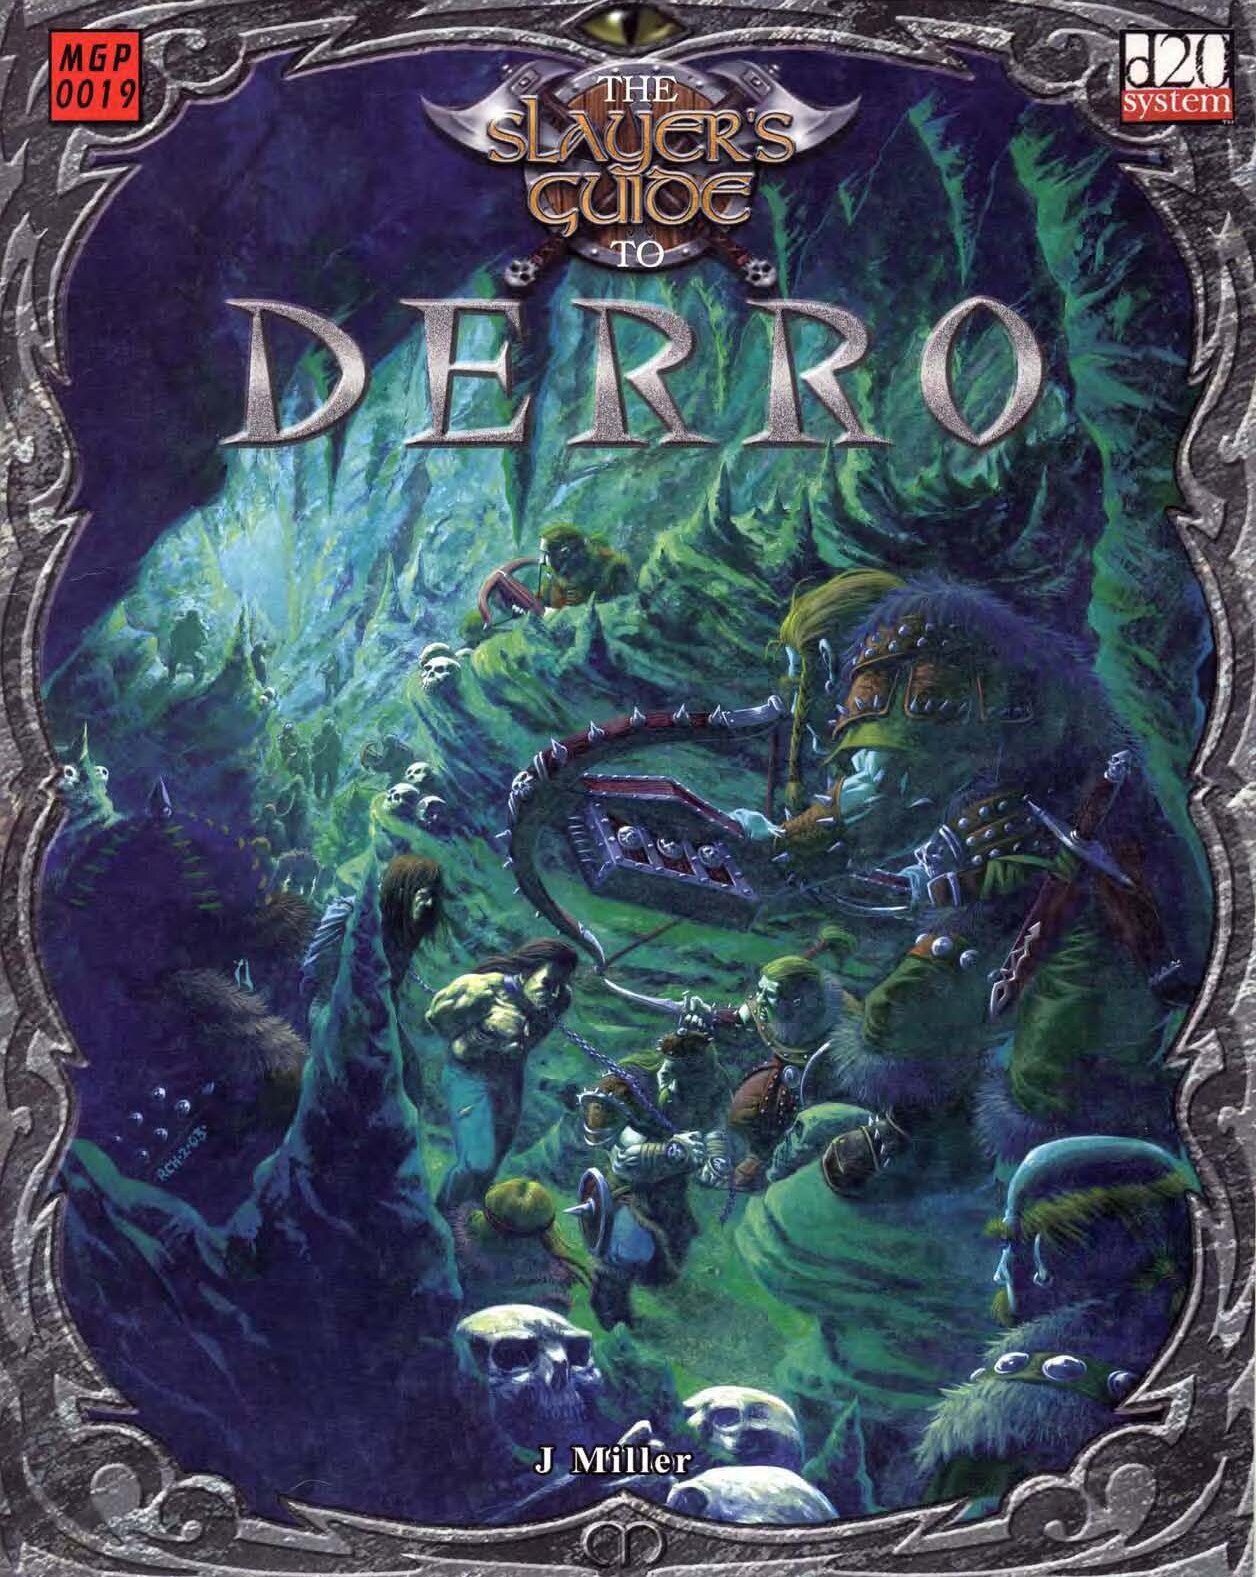 The Slayer's Guide to Derro